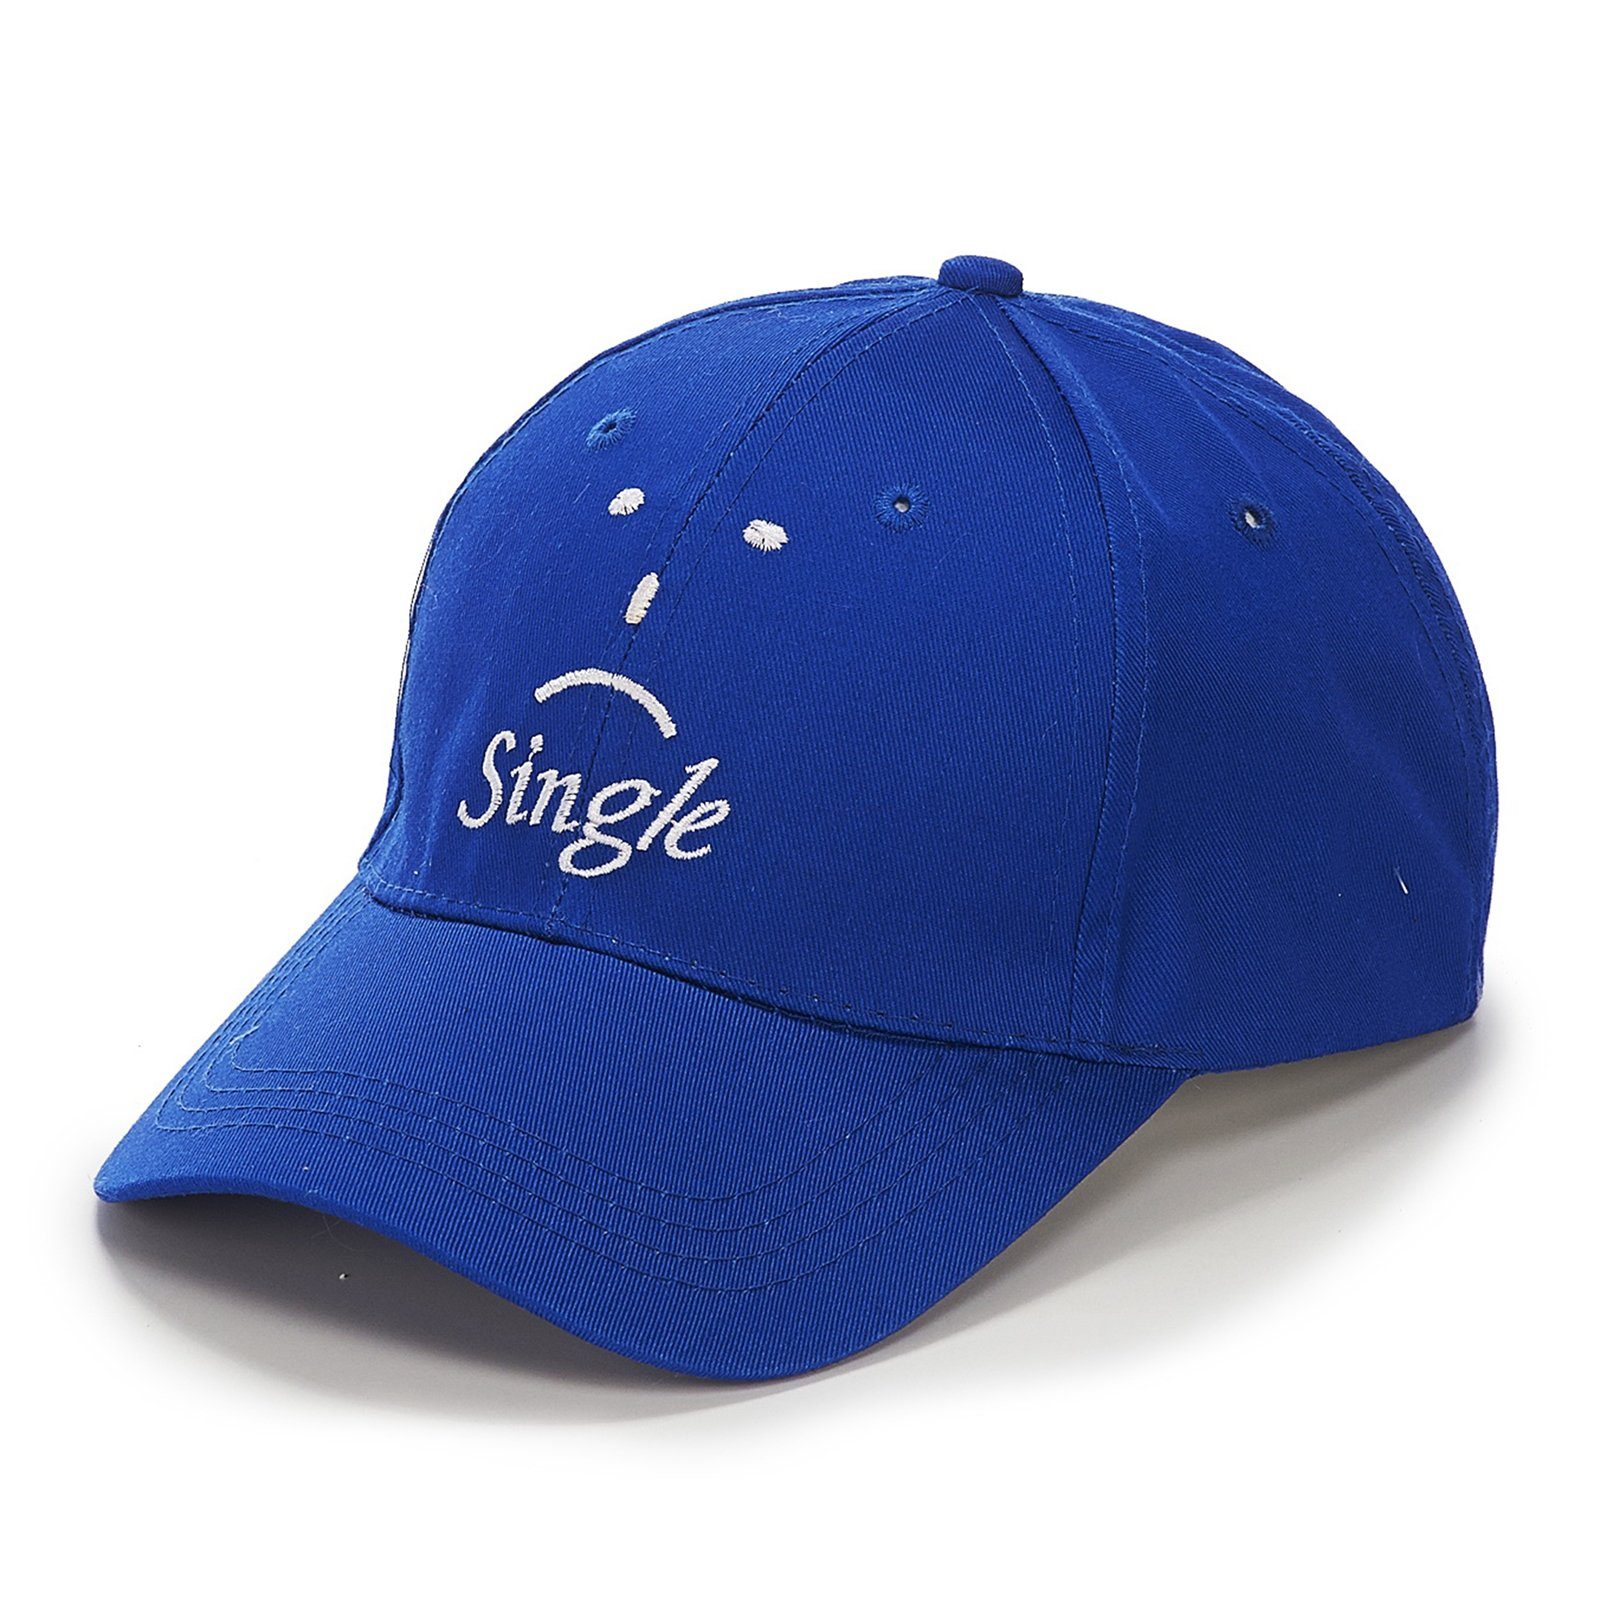 Baseball Single Blau Cap HTI-Living Cap Baseball